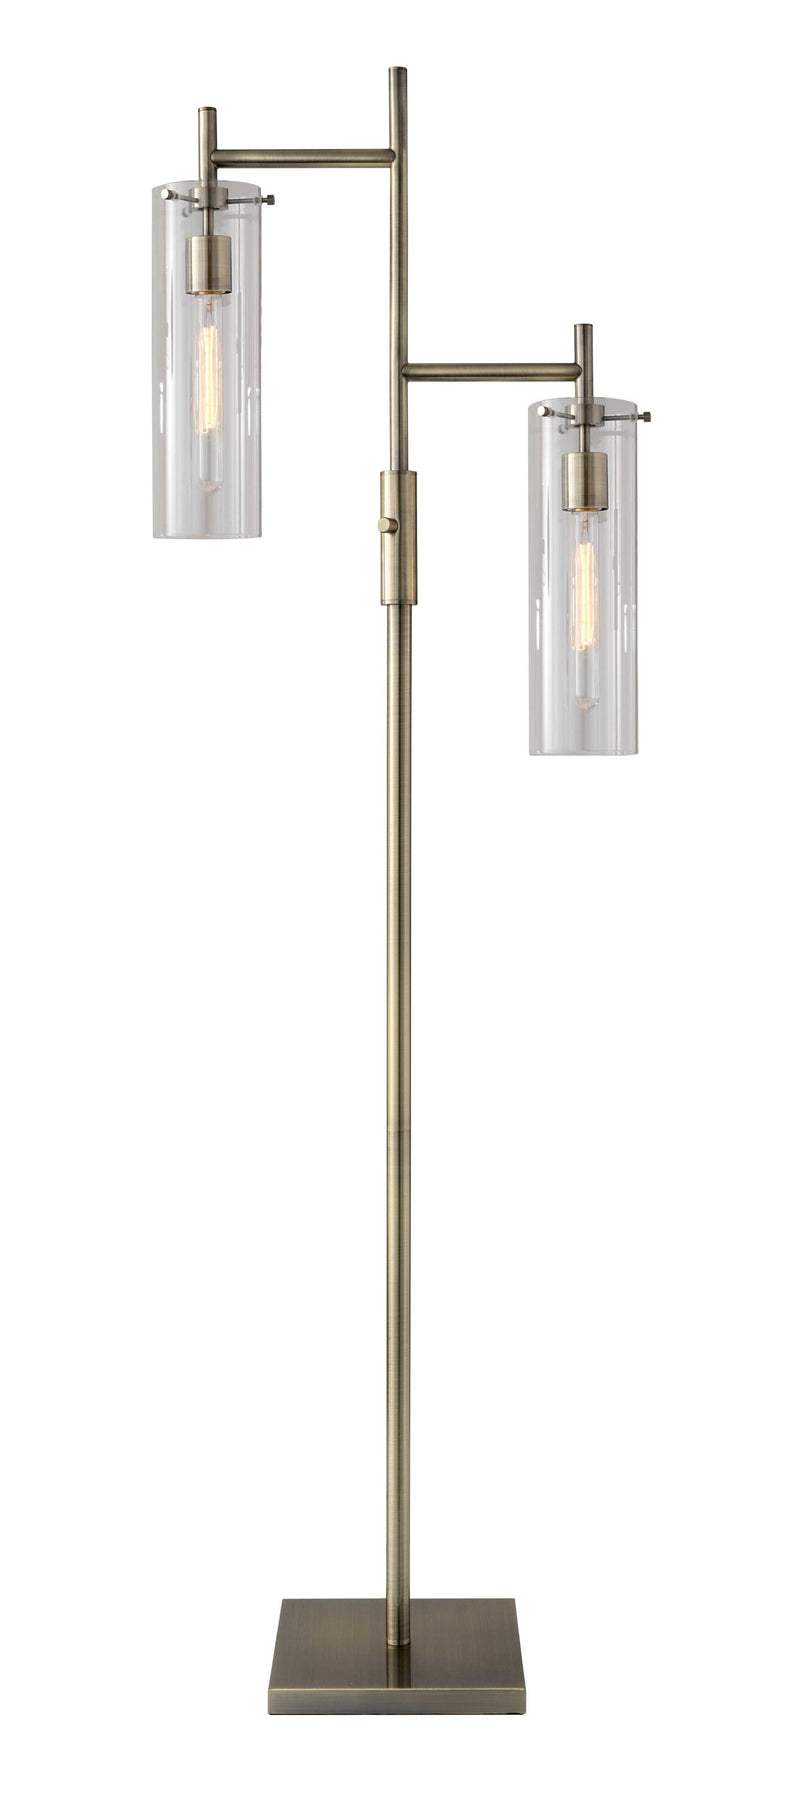 19" X 10" X 64.25" Brass Metal Floor Lamp